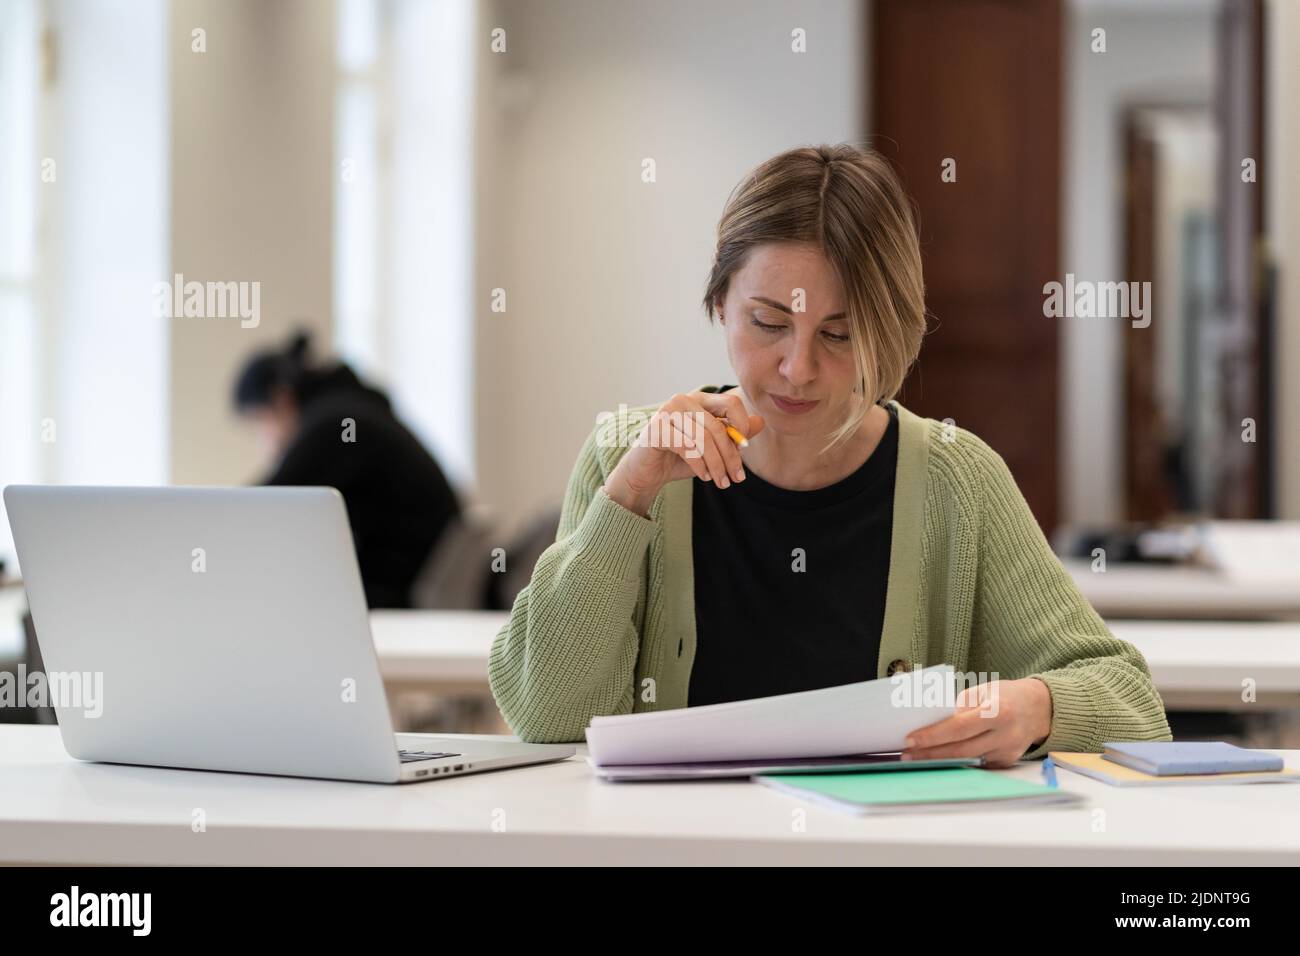 Frauen mittleren Alters, die im Campus-Studium arbeiten, bereiten sich auf eine Prüfung oder einen ernsthaften Test an einer Universität oder Hochschule vor Stockfoto